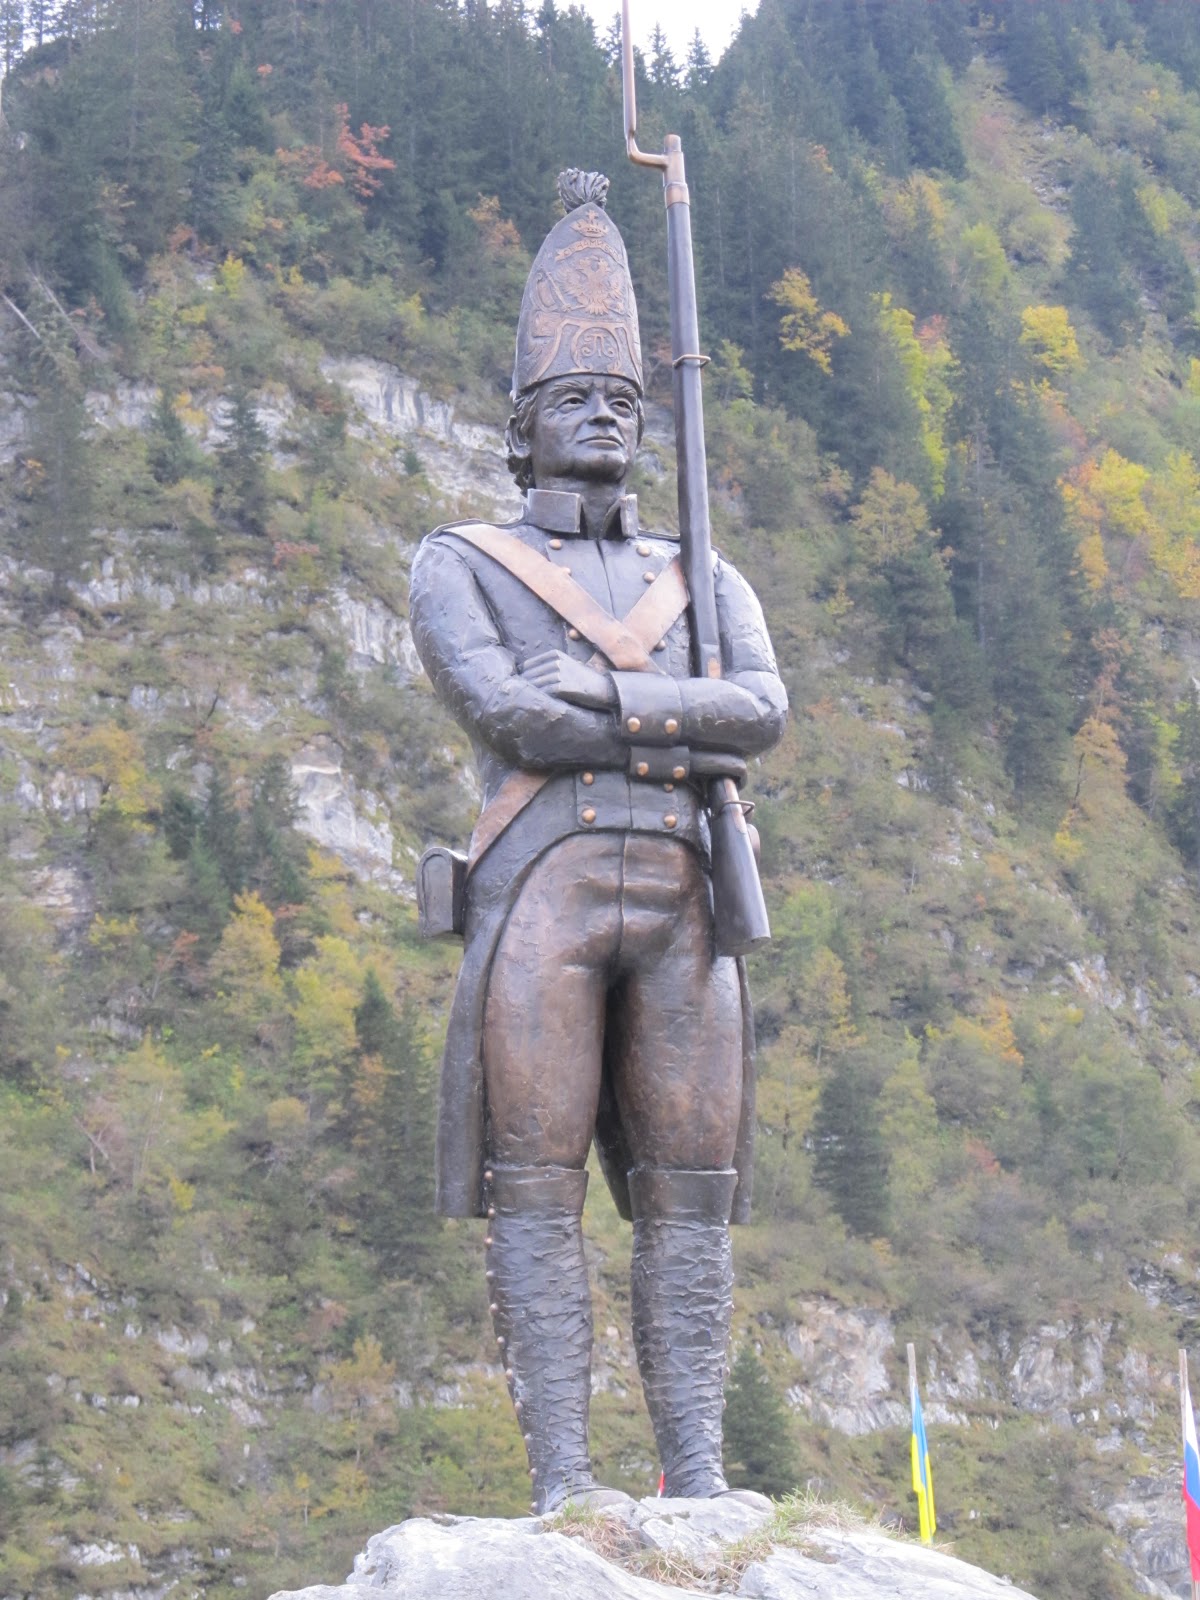 памятник суворову в швейцарии возле чертова моста